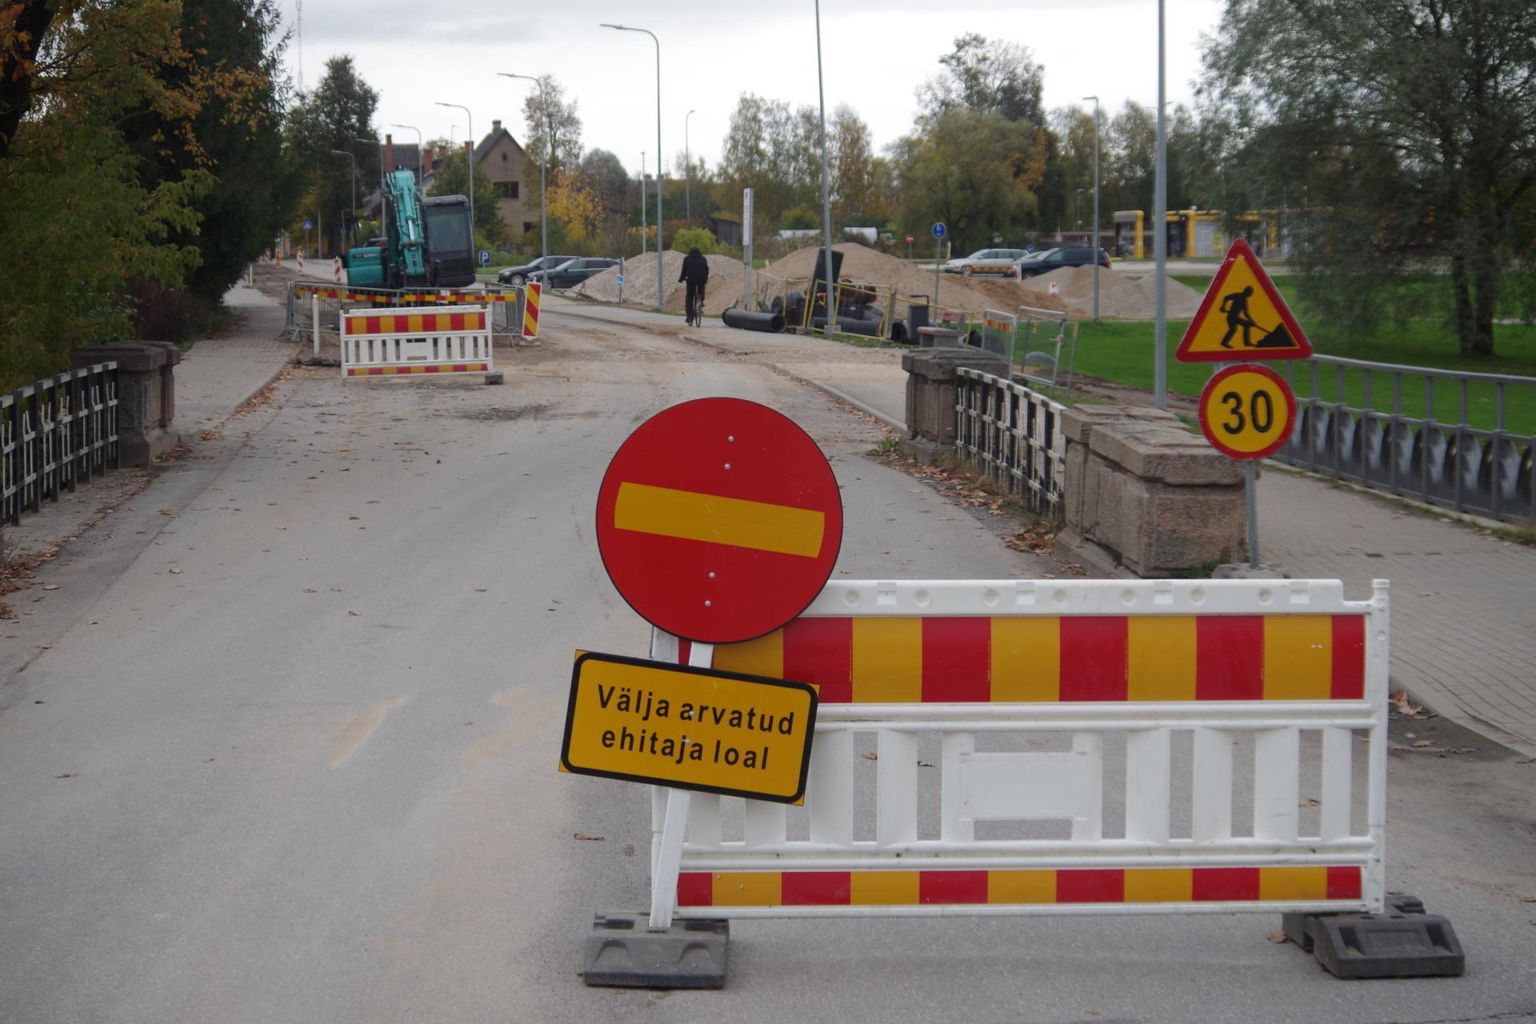 Tartu tänav on novembrini lõpuni Koreli sillast kuni Vilja tänava ristmikuni liiklusele suletud, mistõttu ei pääse inimesed ka bussijaama parklasse. FOTO: Arved Breidaks